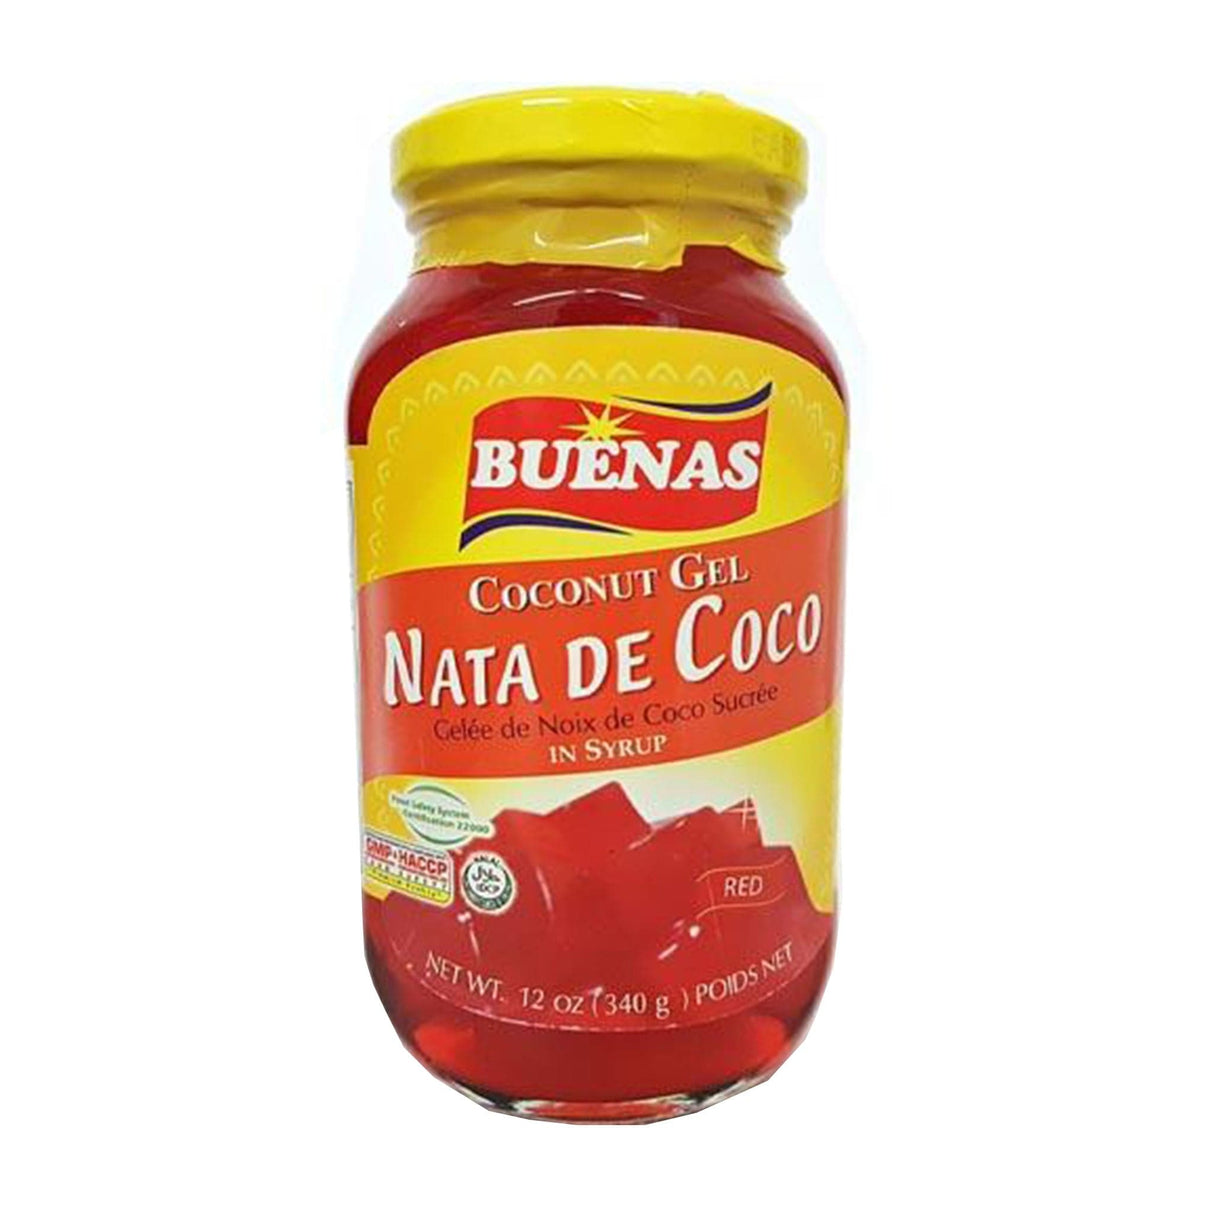 Buenas Coconut Gel Nata De Coco in Syrup (Red)